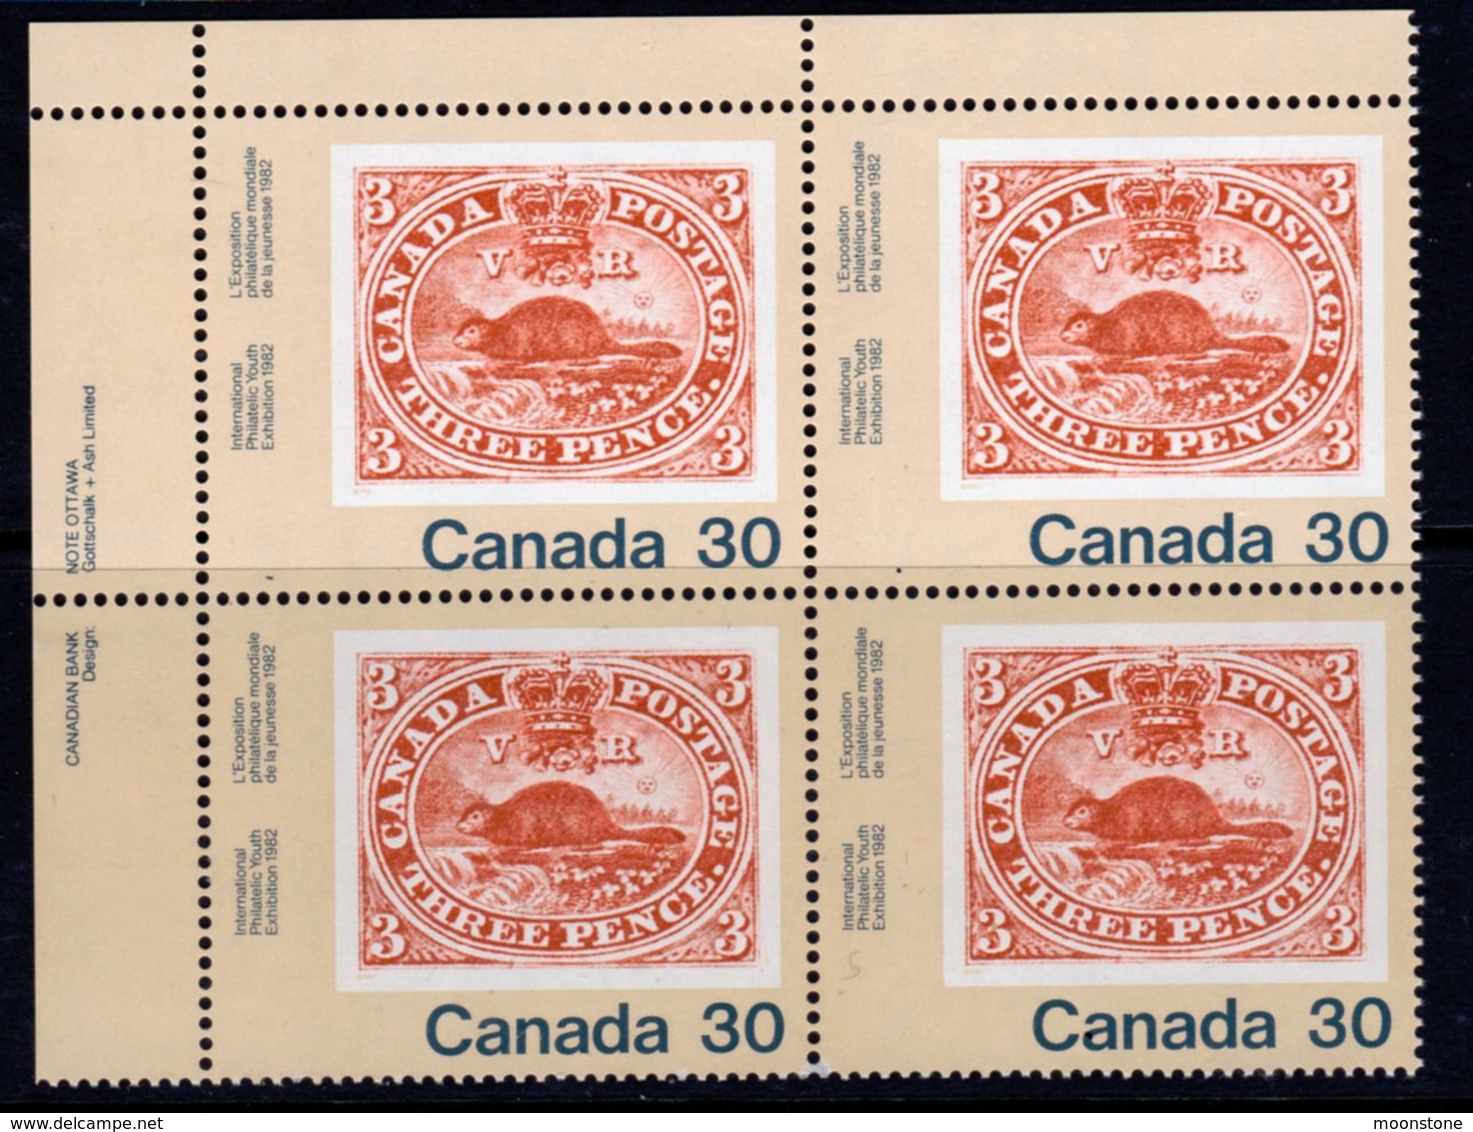 Canada 1982 Canada '82 Stamp Exhibition 30c Value Marginal Block Of 4, MNH, SG 1037 - Unused Stamps